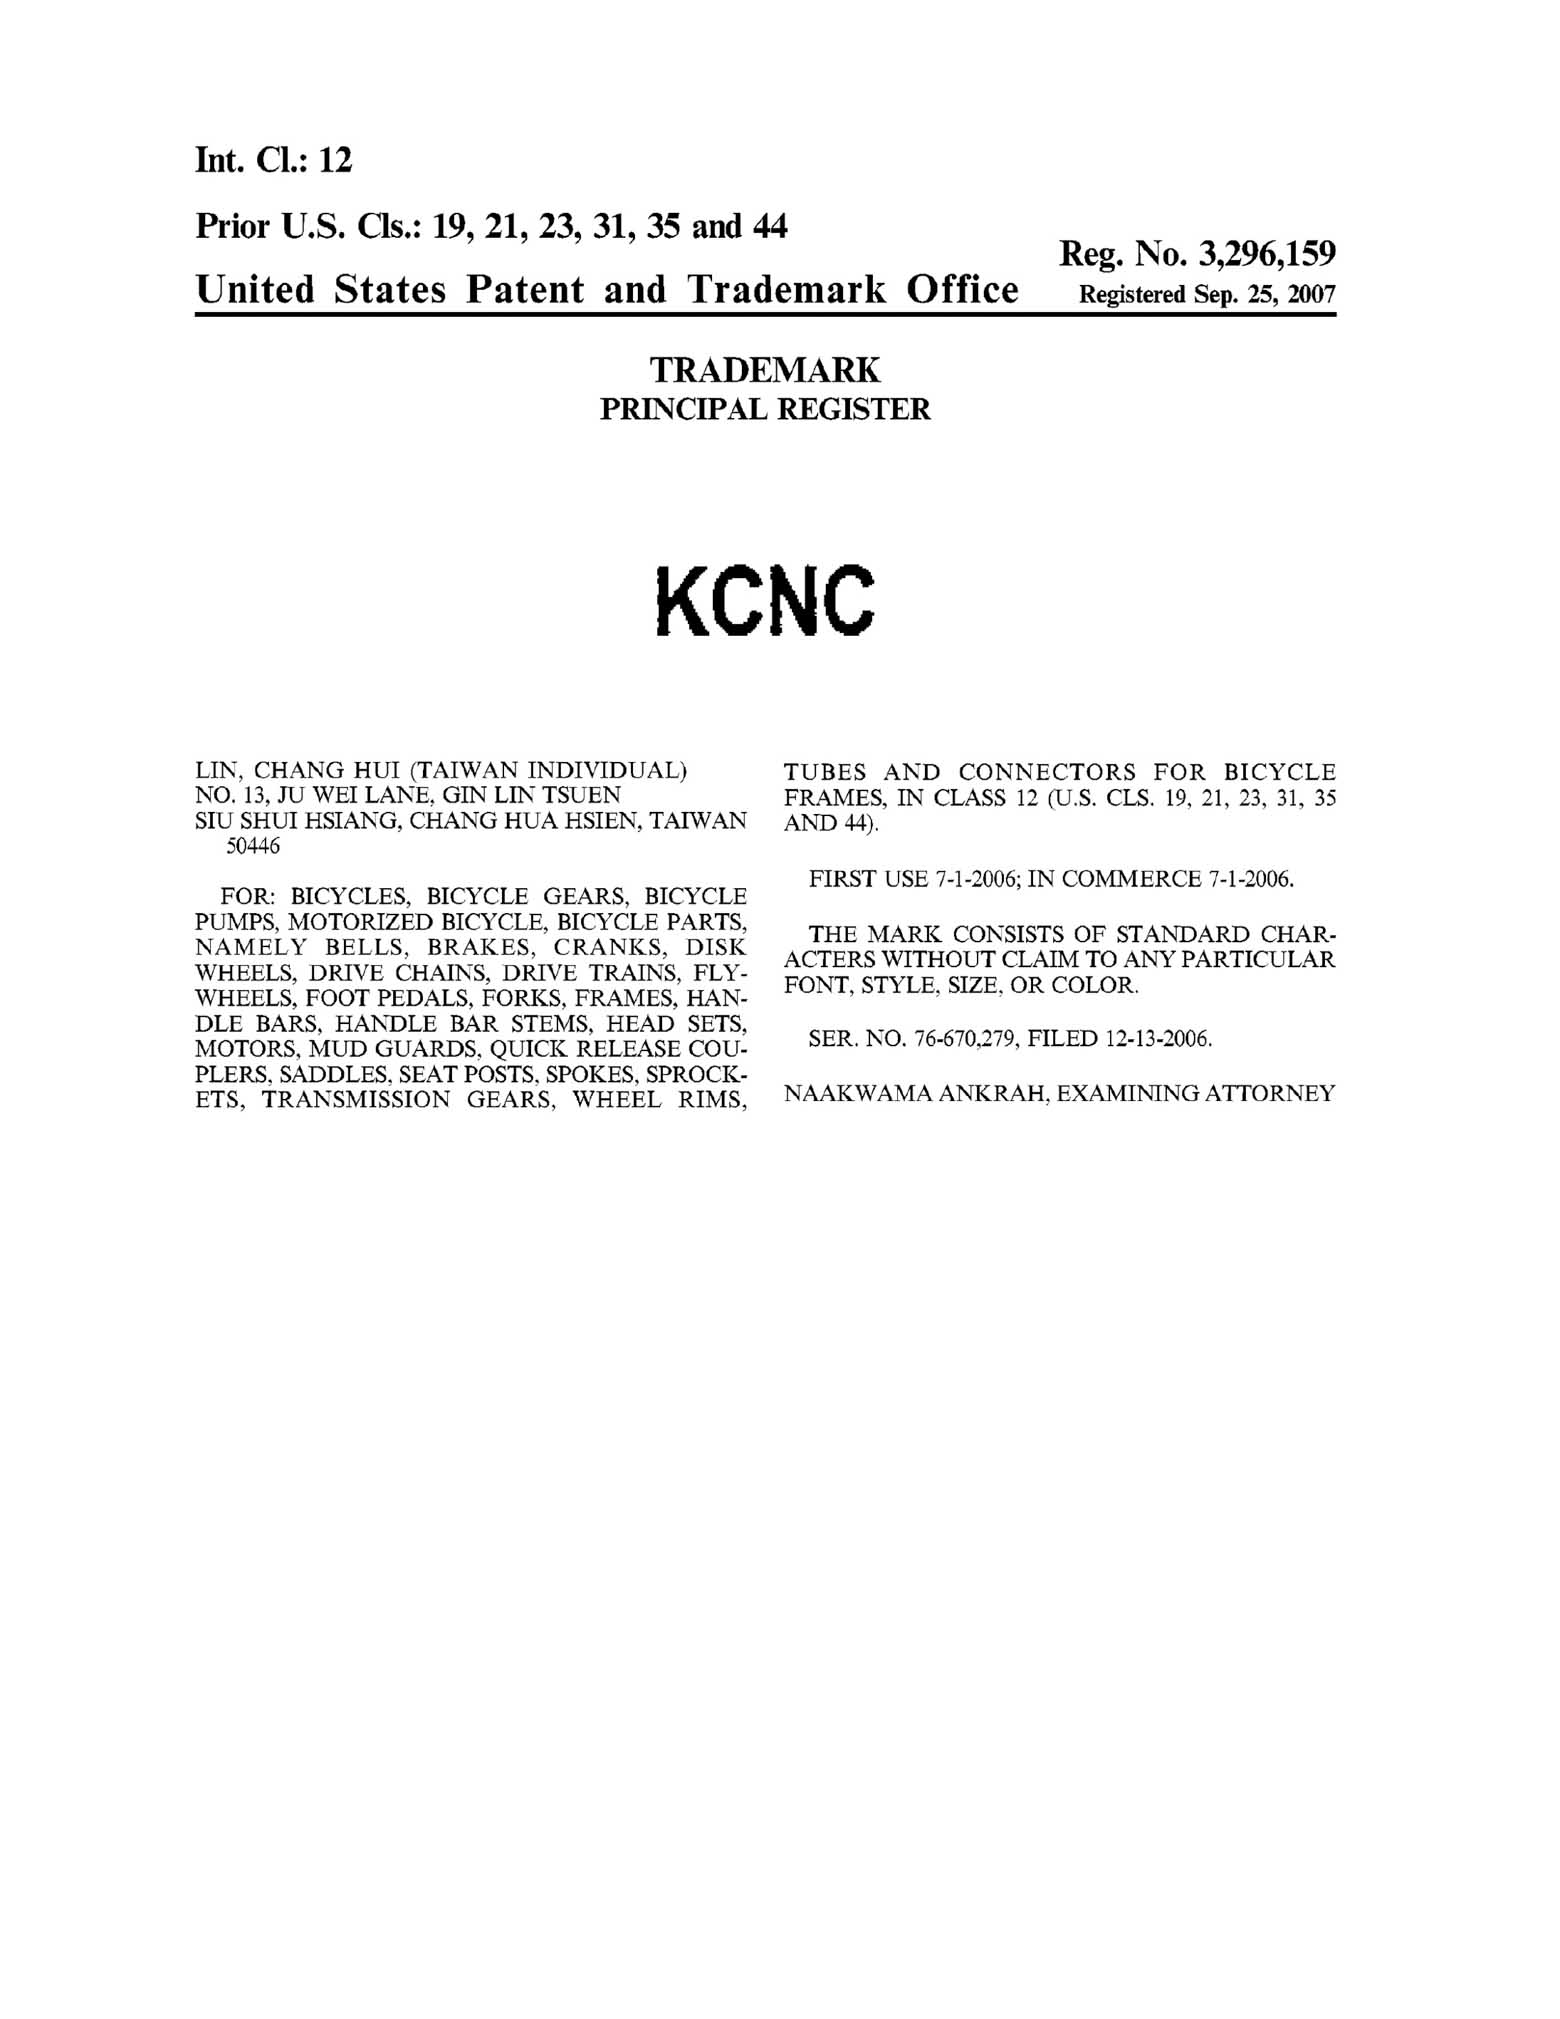 US Trademark 3,296,159 - KCNC main image